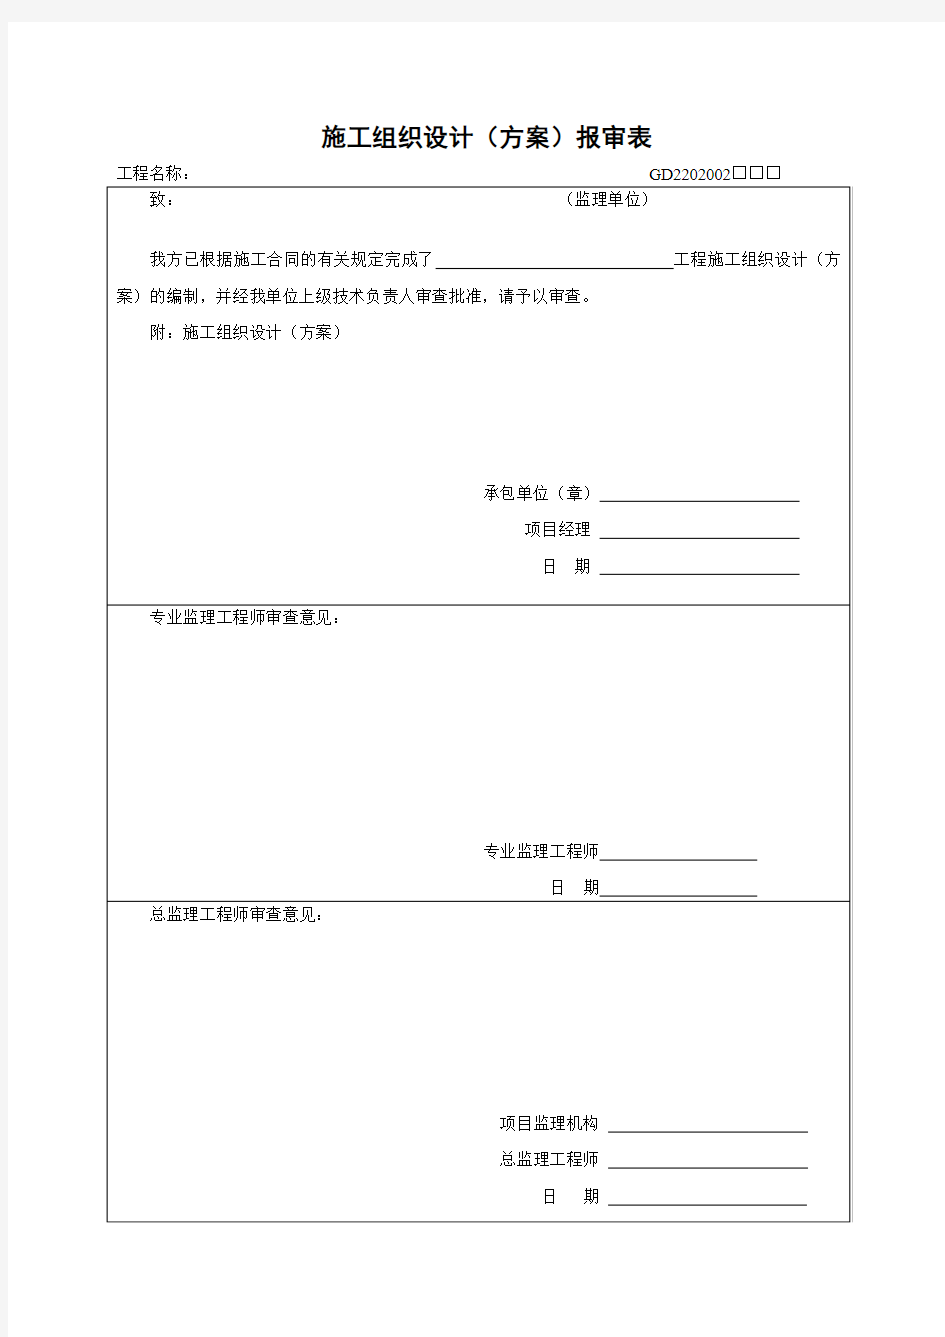 广东省监理资料表格 建筑资料 监理资料 省统表 资料 监理